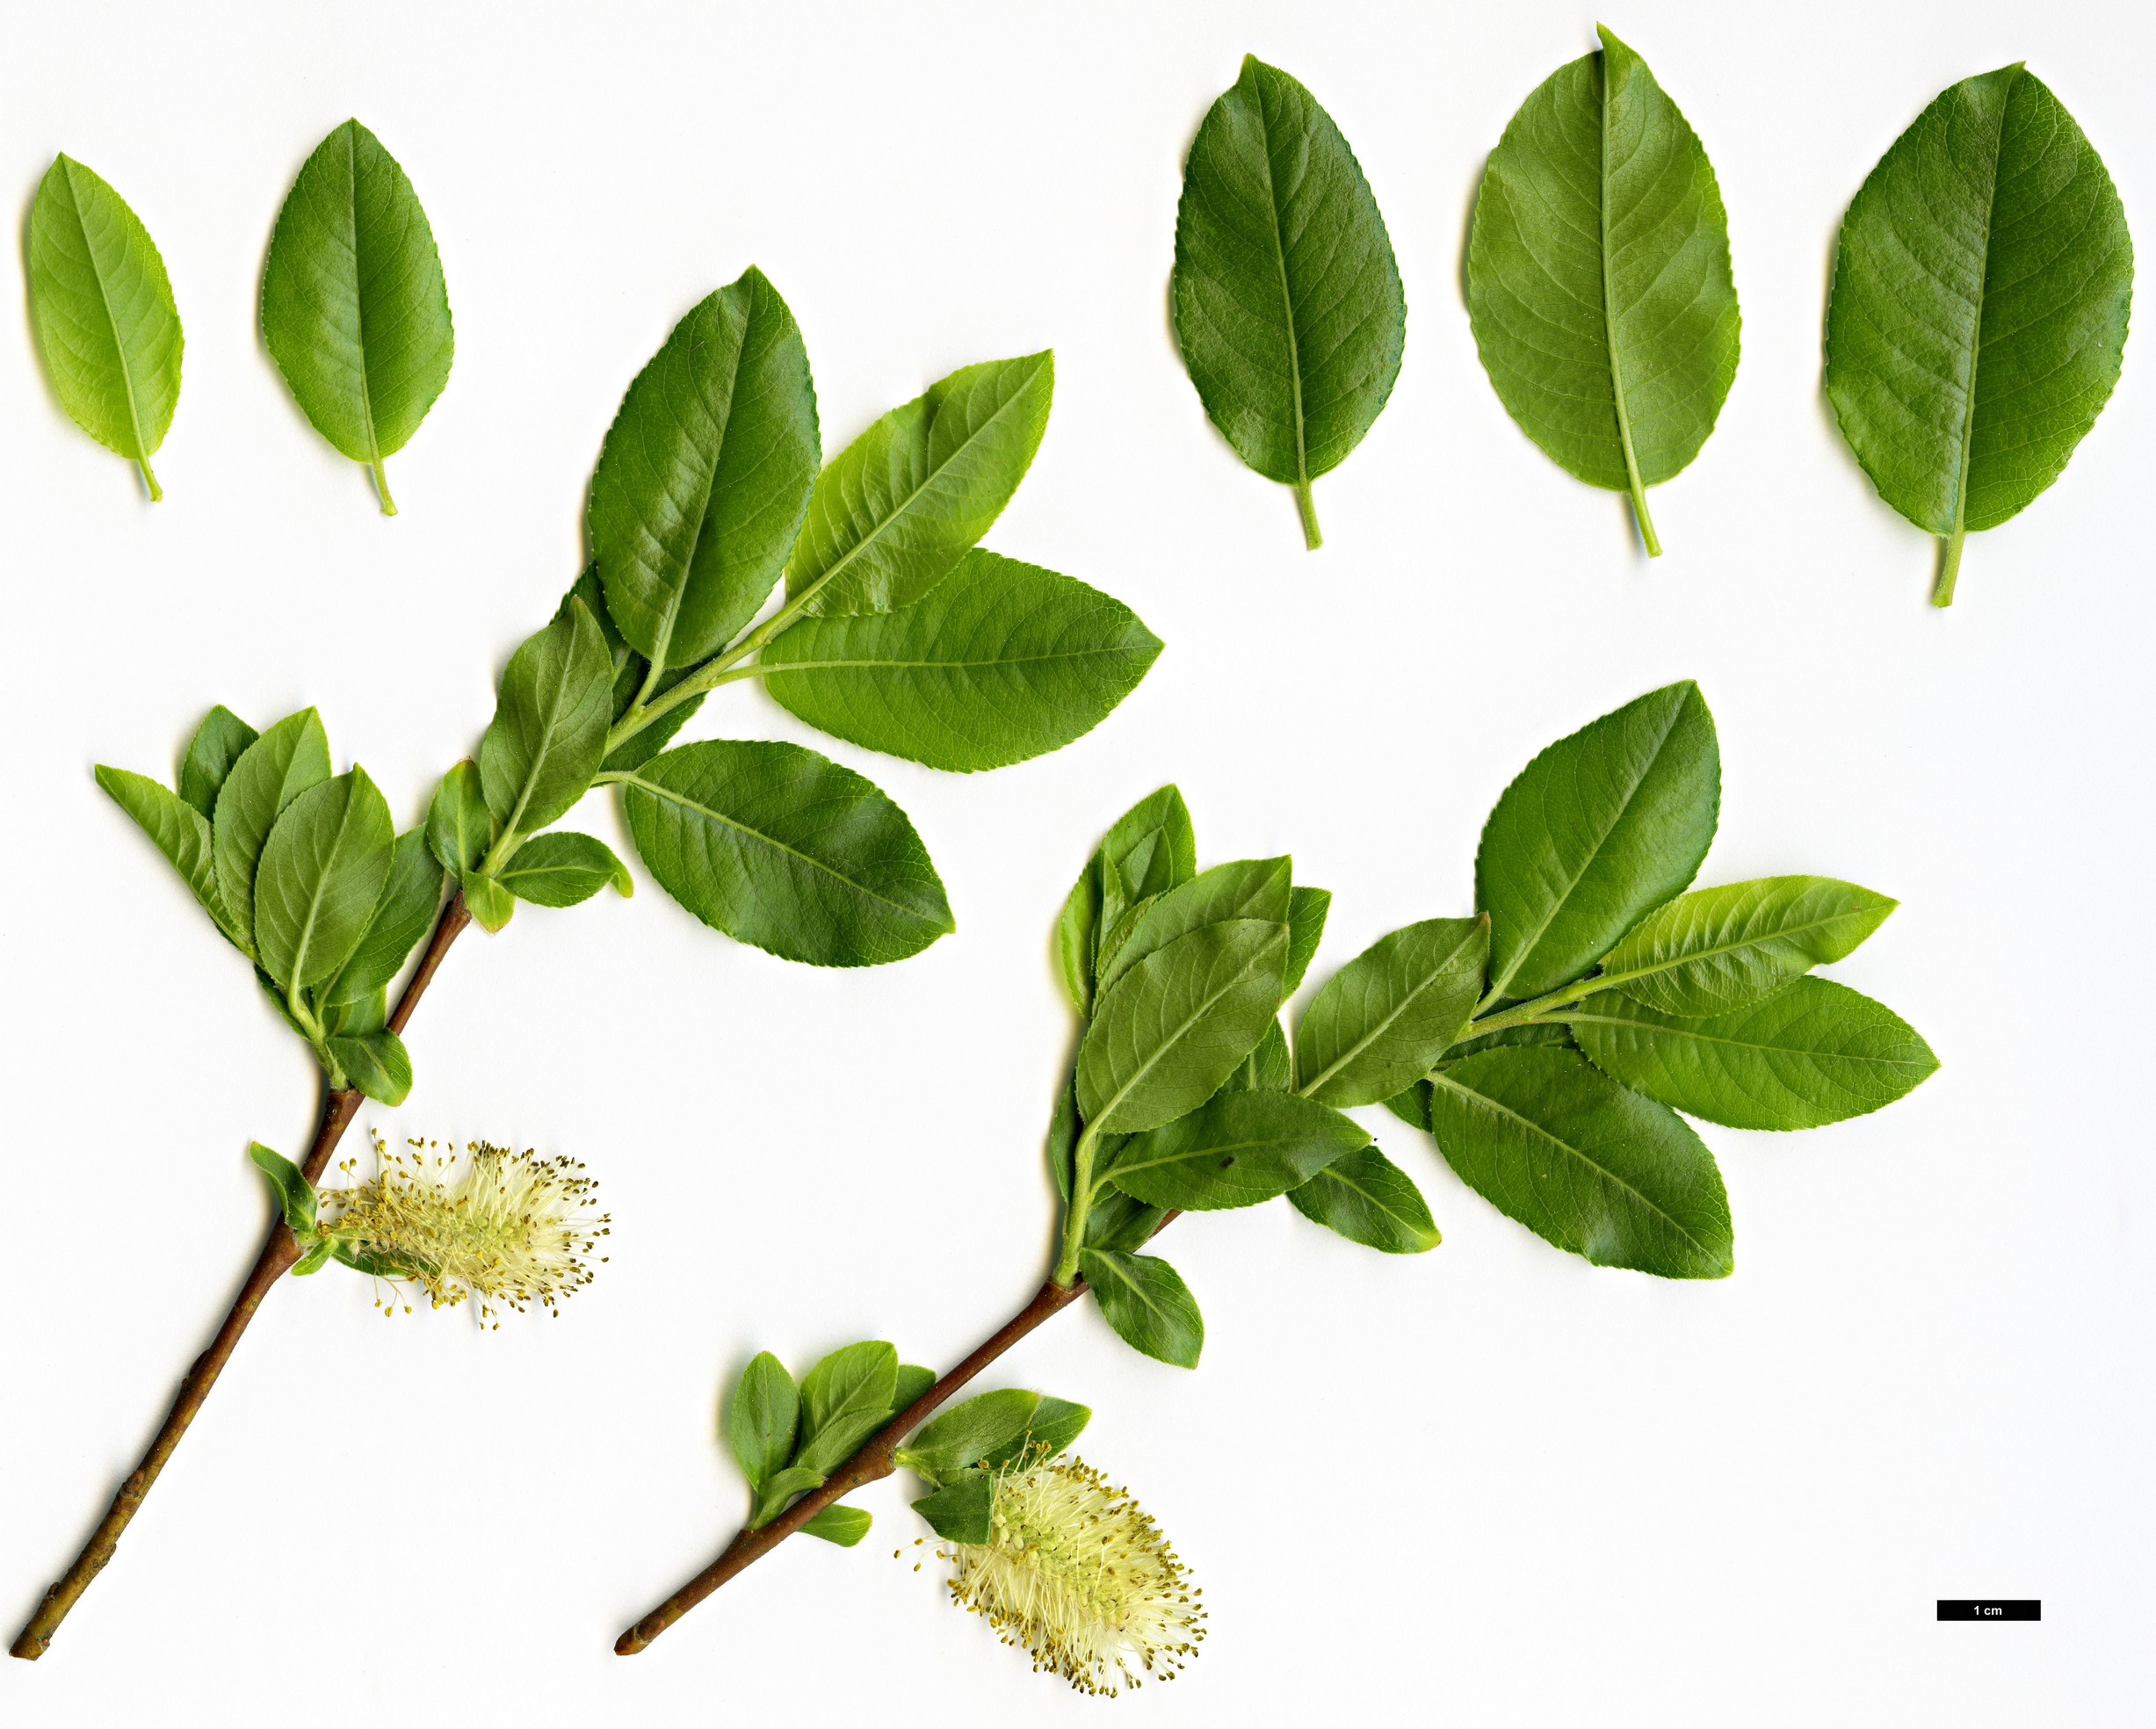 High resolution image: Family: Salicaceae - Genus: Salix - Taxon: mielichhoferi